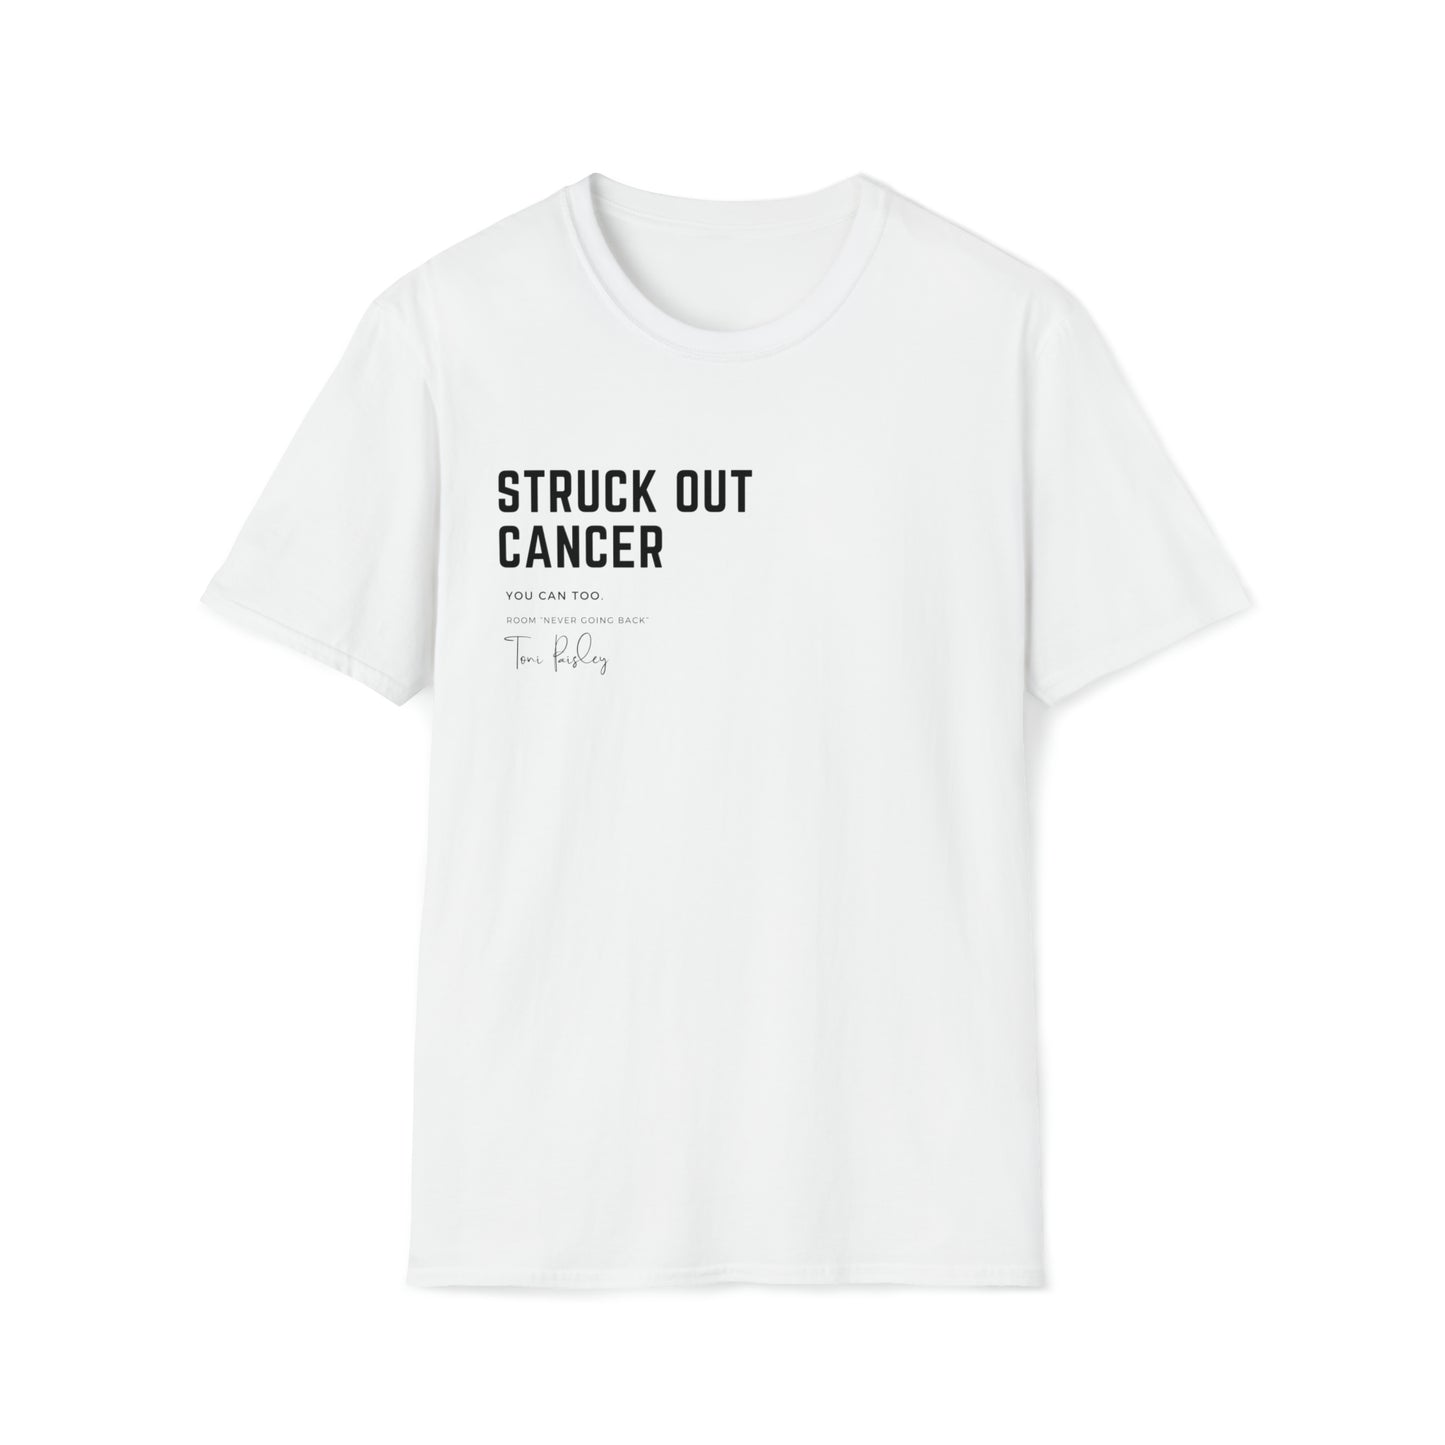 Struck Out Cancer Shirt UNISEX